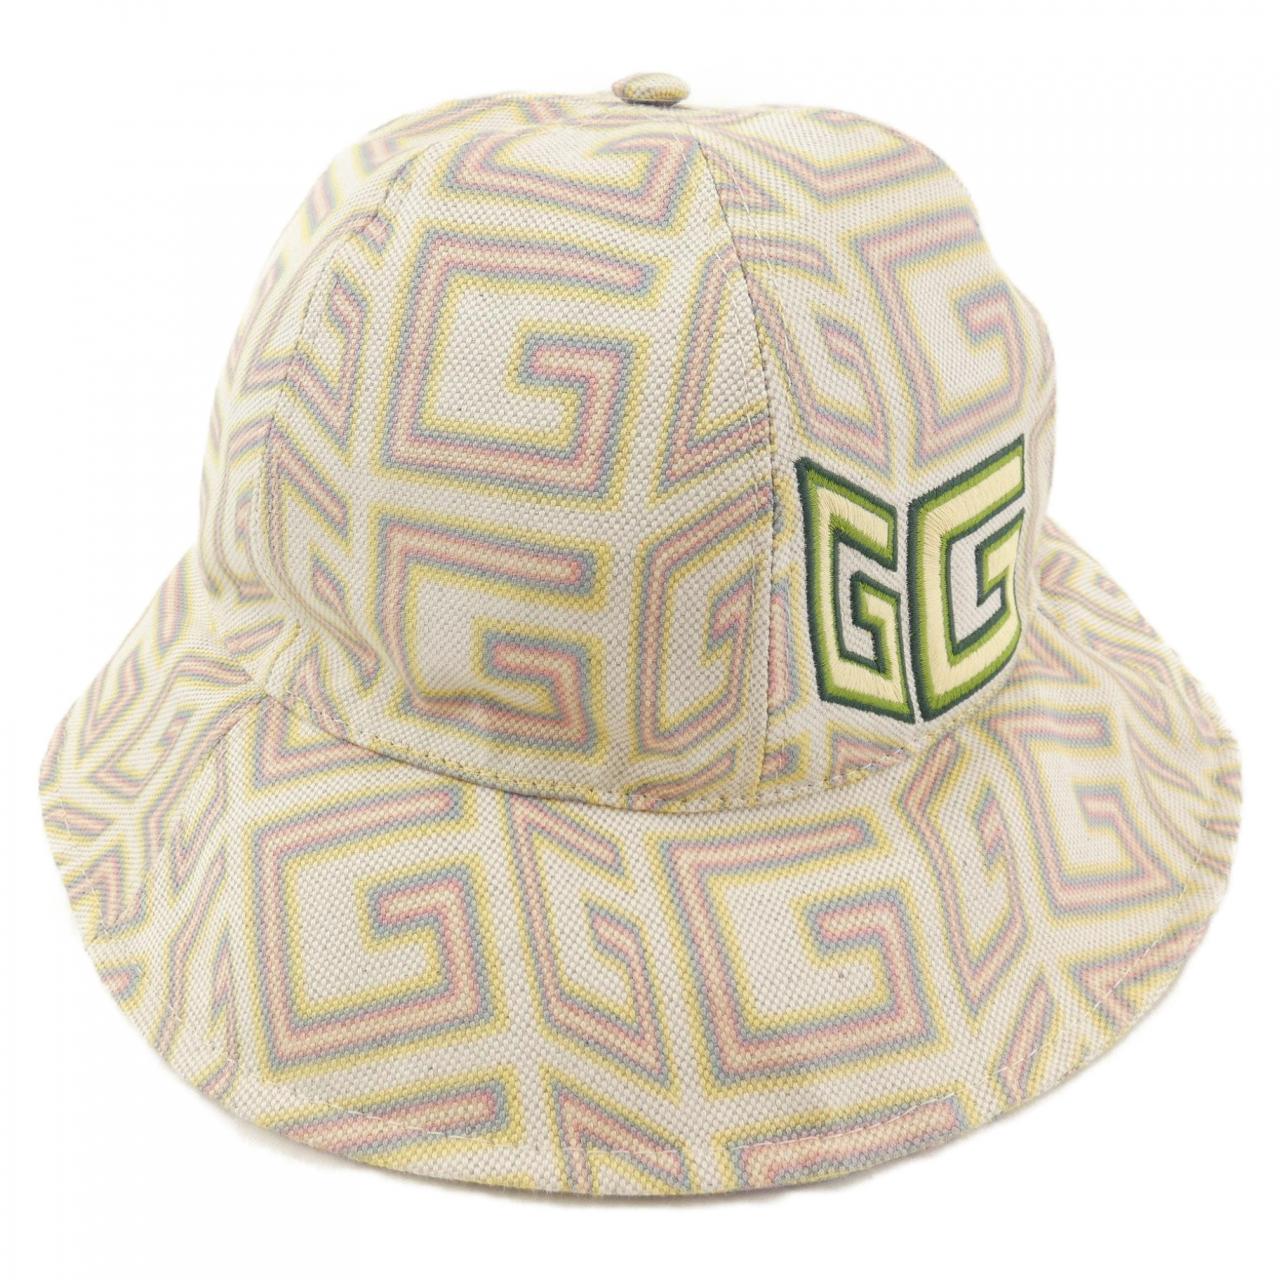 Gucci GUCCI hat